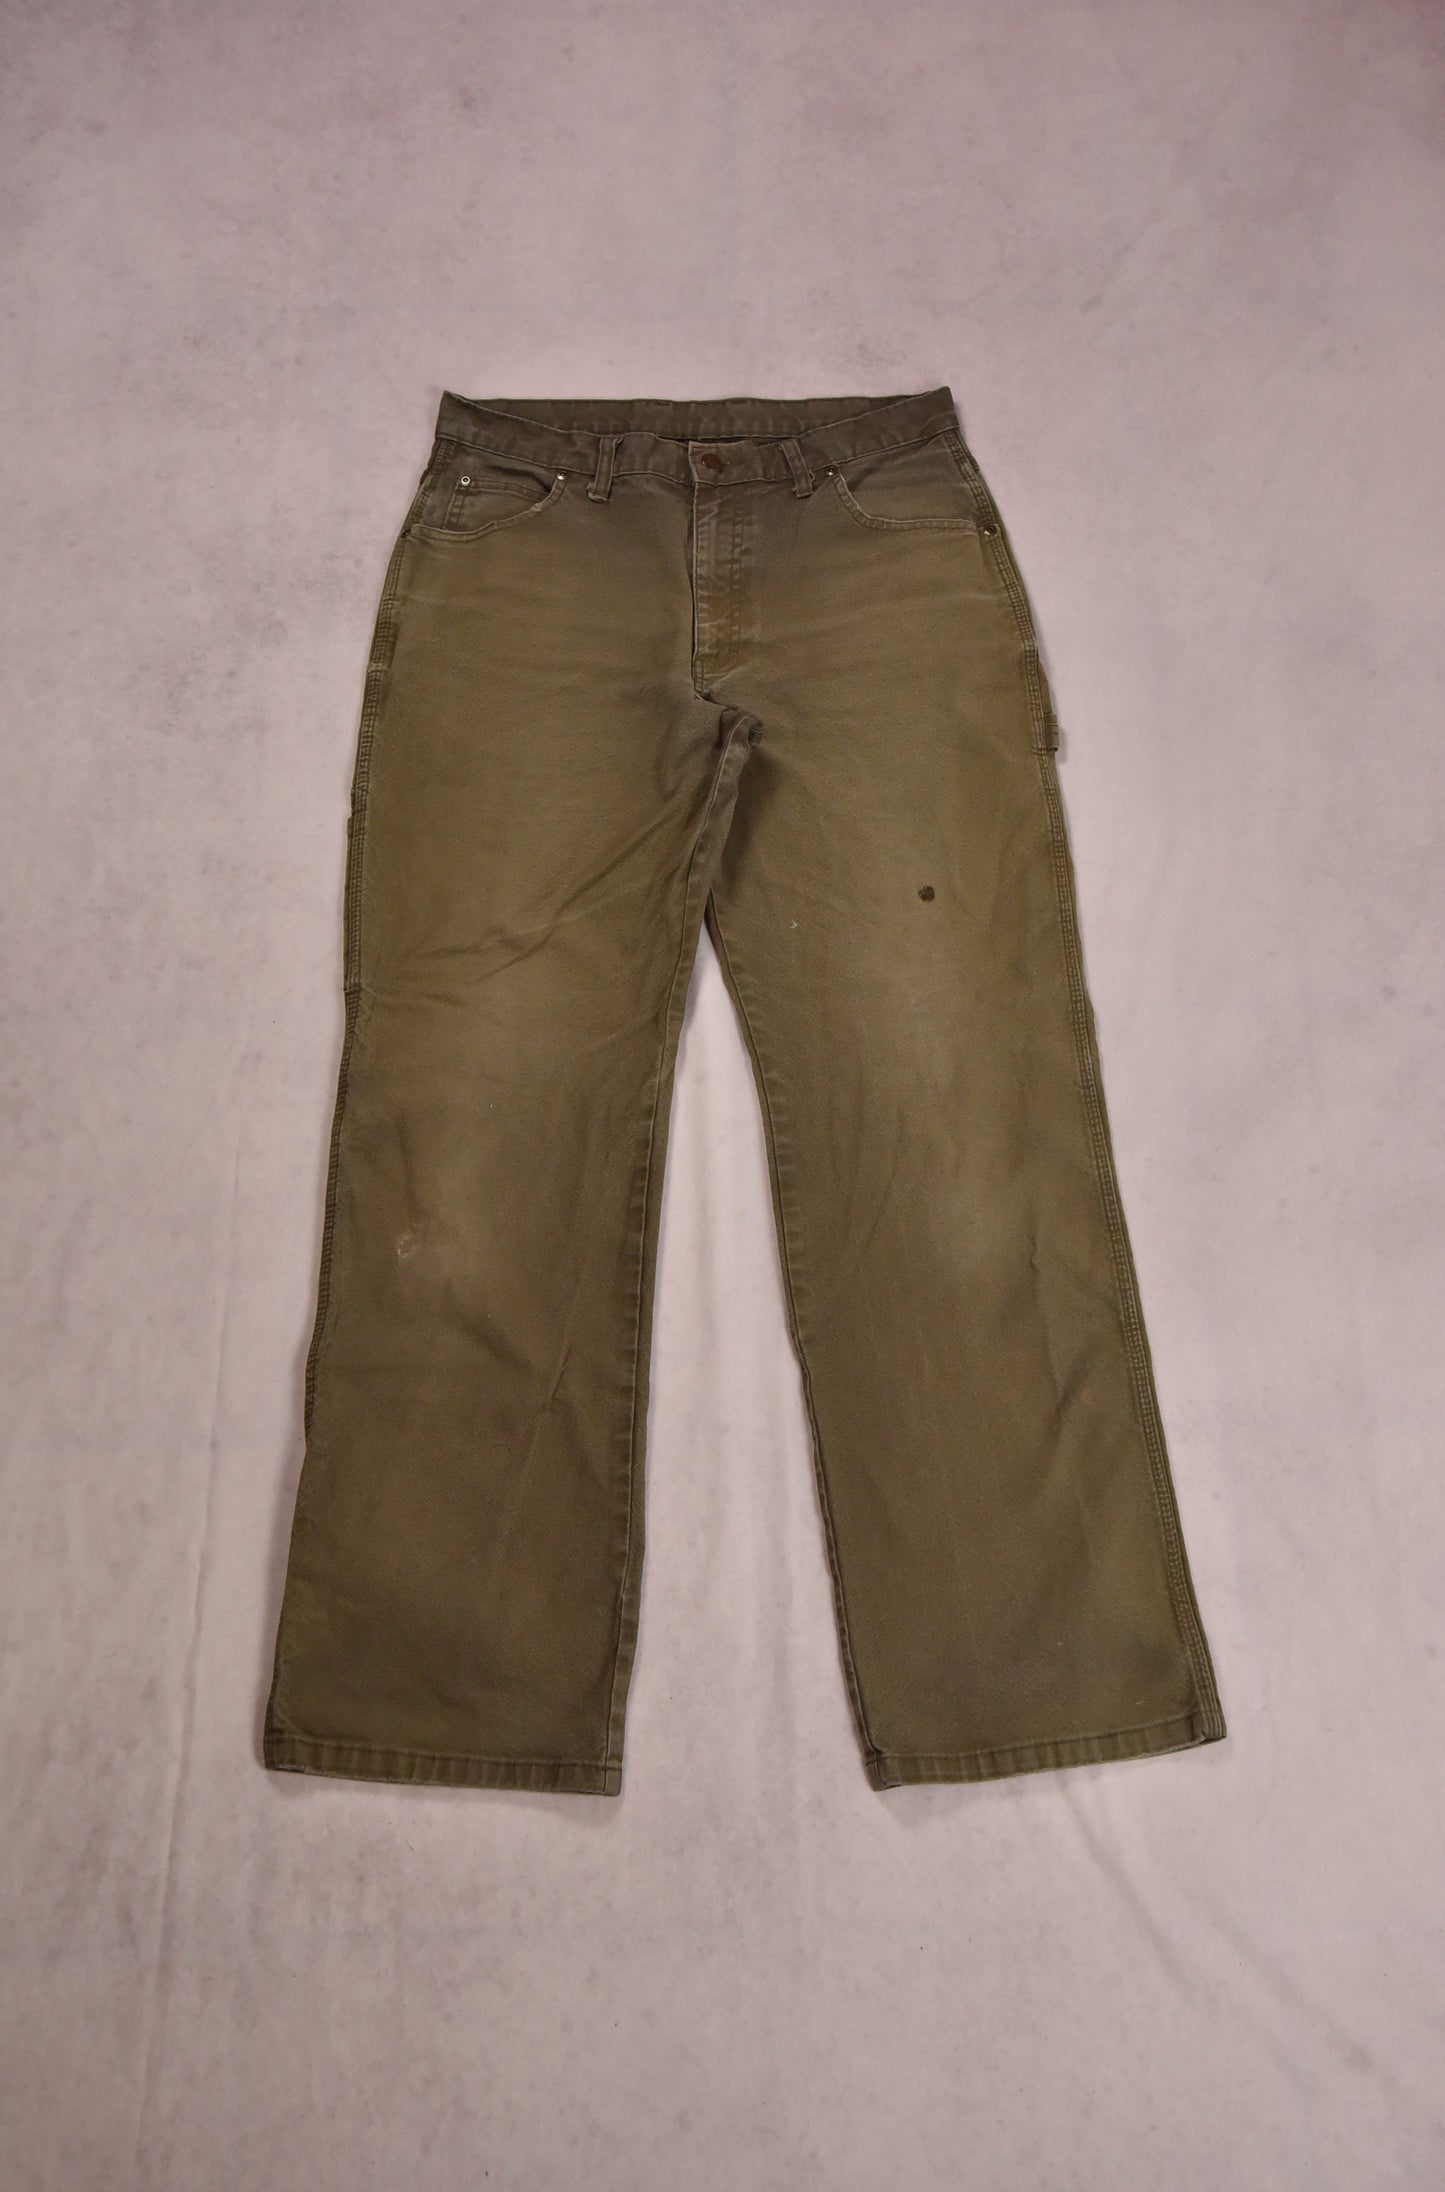 Dickies Workwear Pants Vintage / 32x32